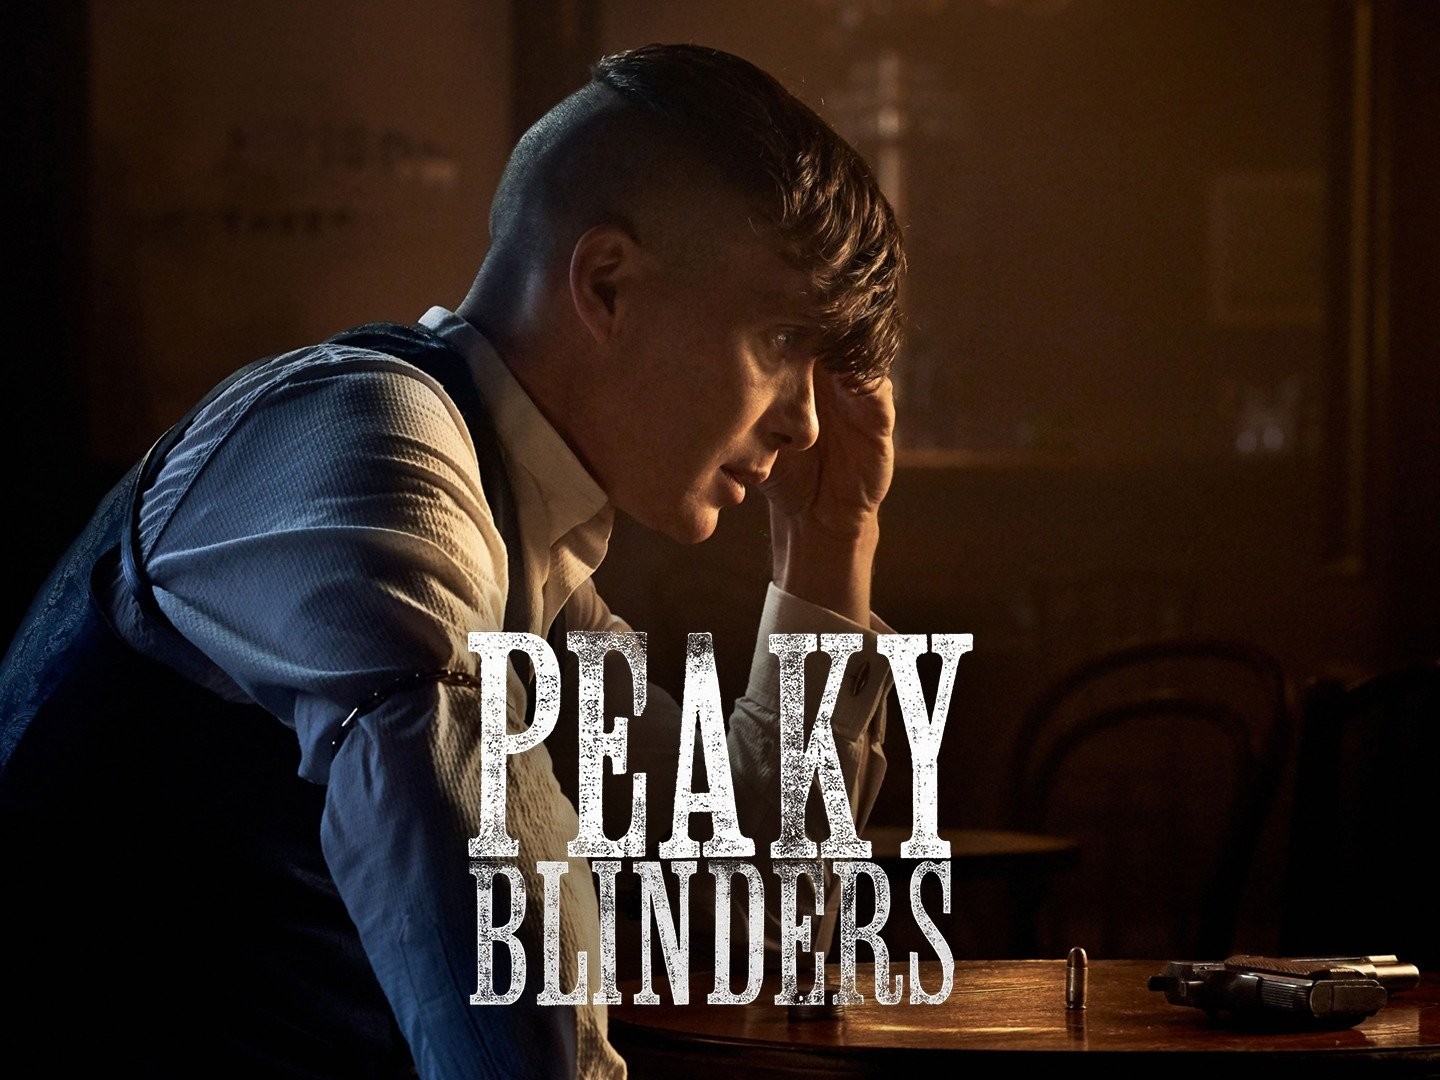 Peaky Blinders - Rotten Tomatoes